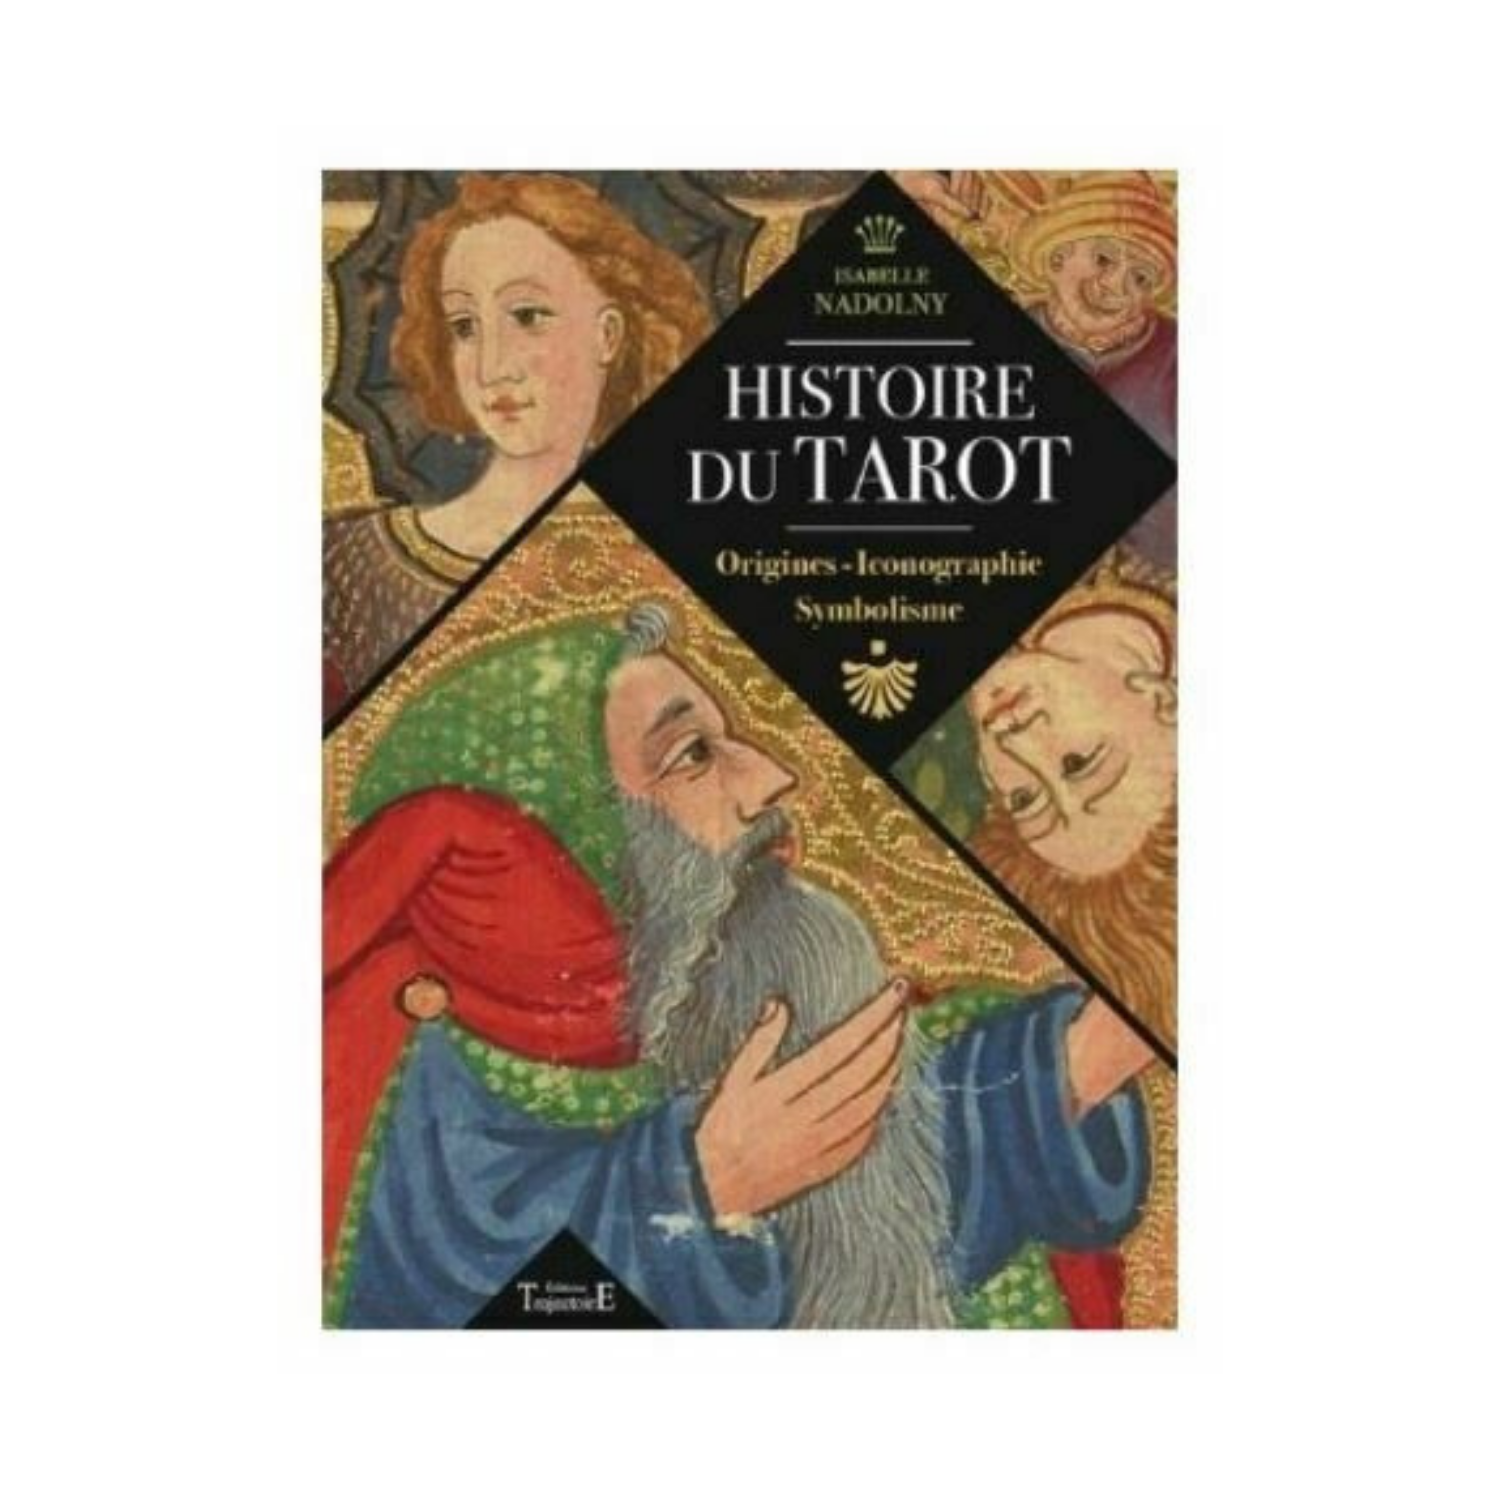 Histoire du tarot - Origines - Iconographie - Symbolisme